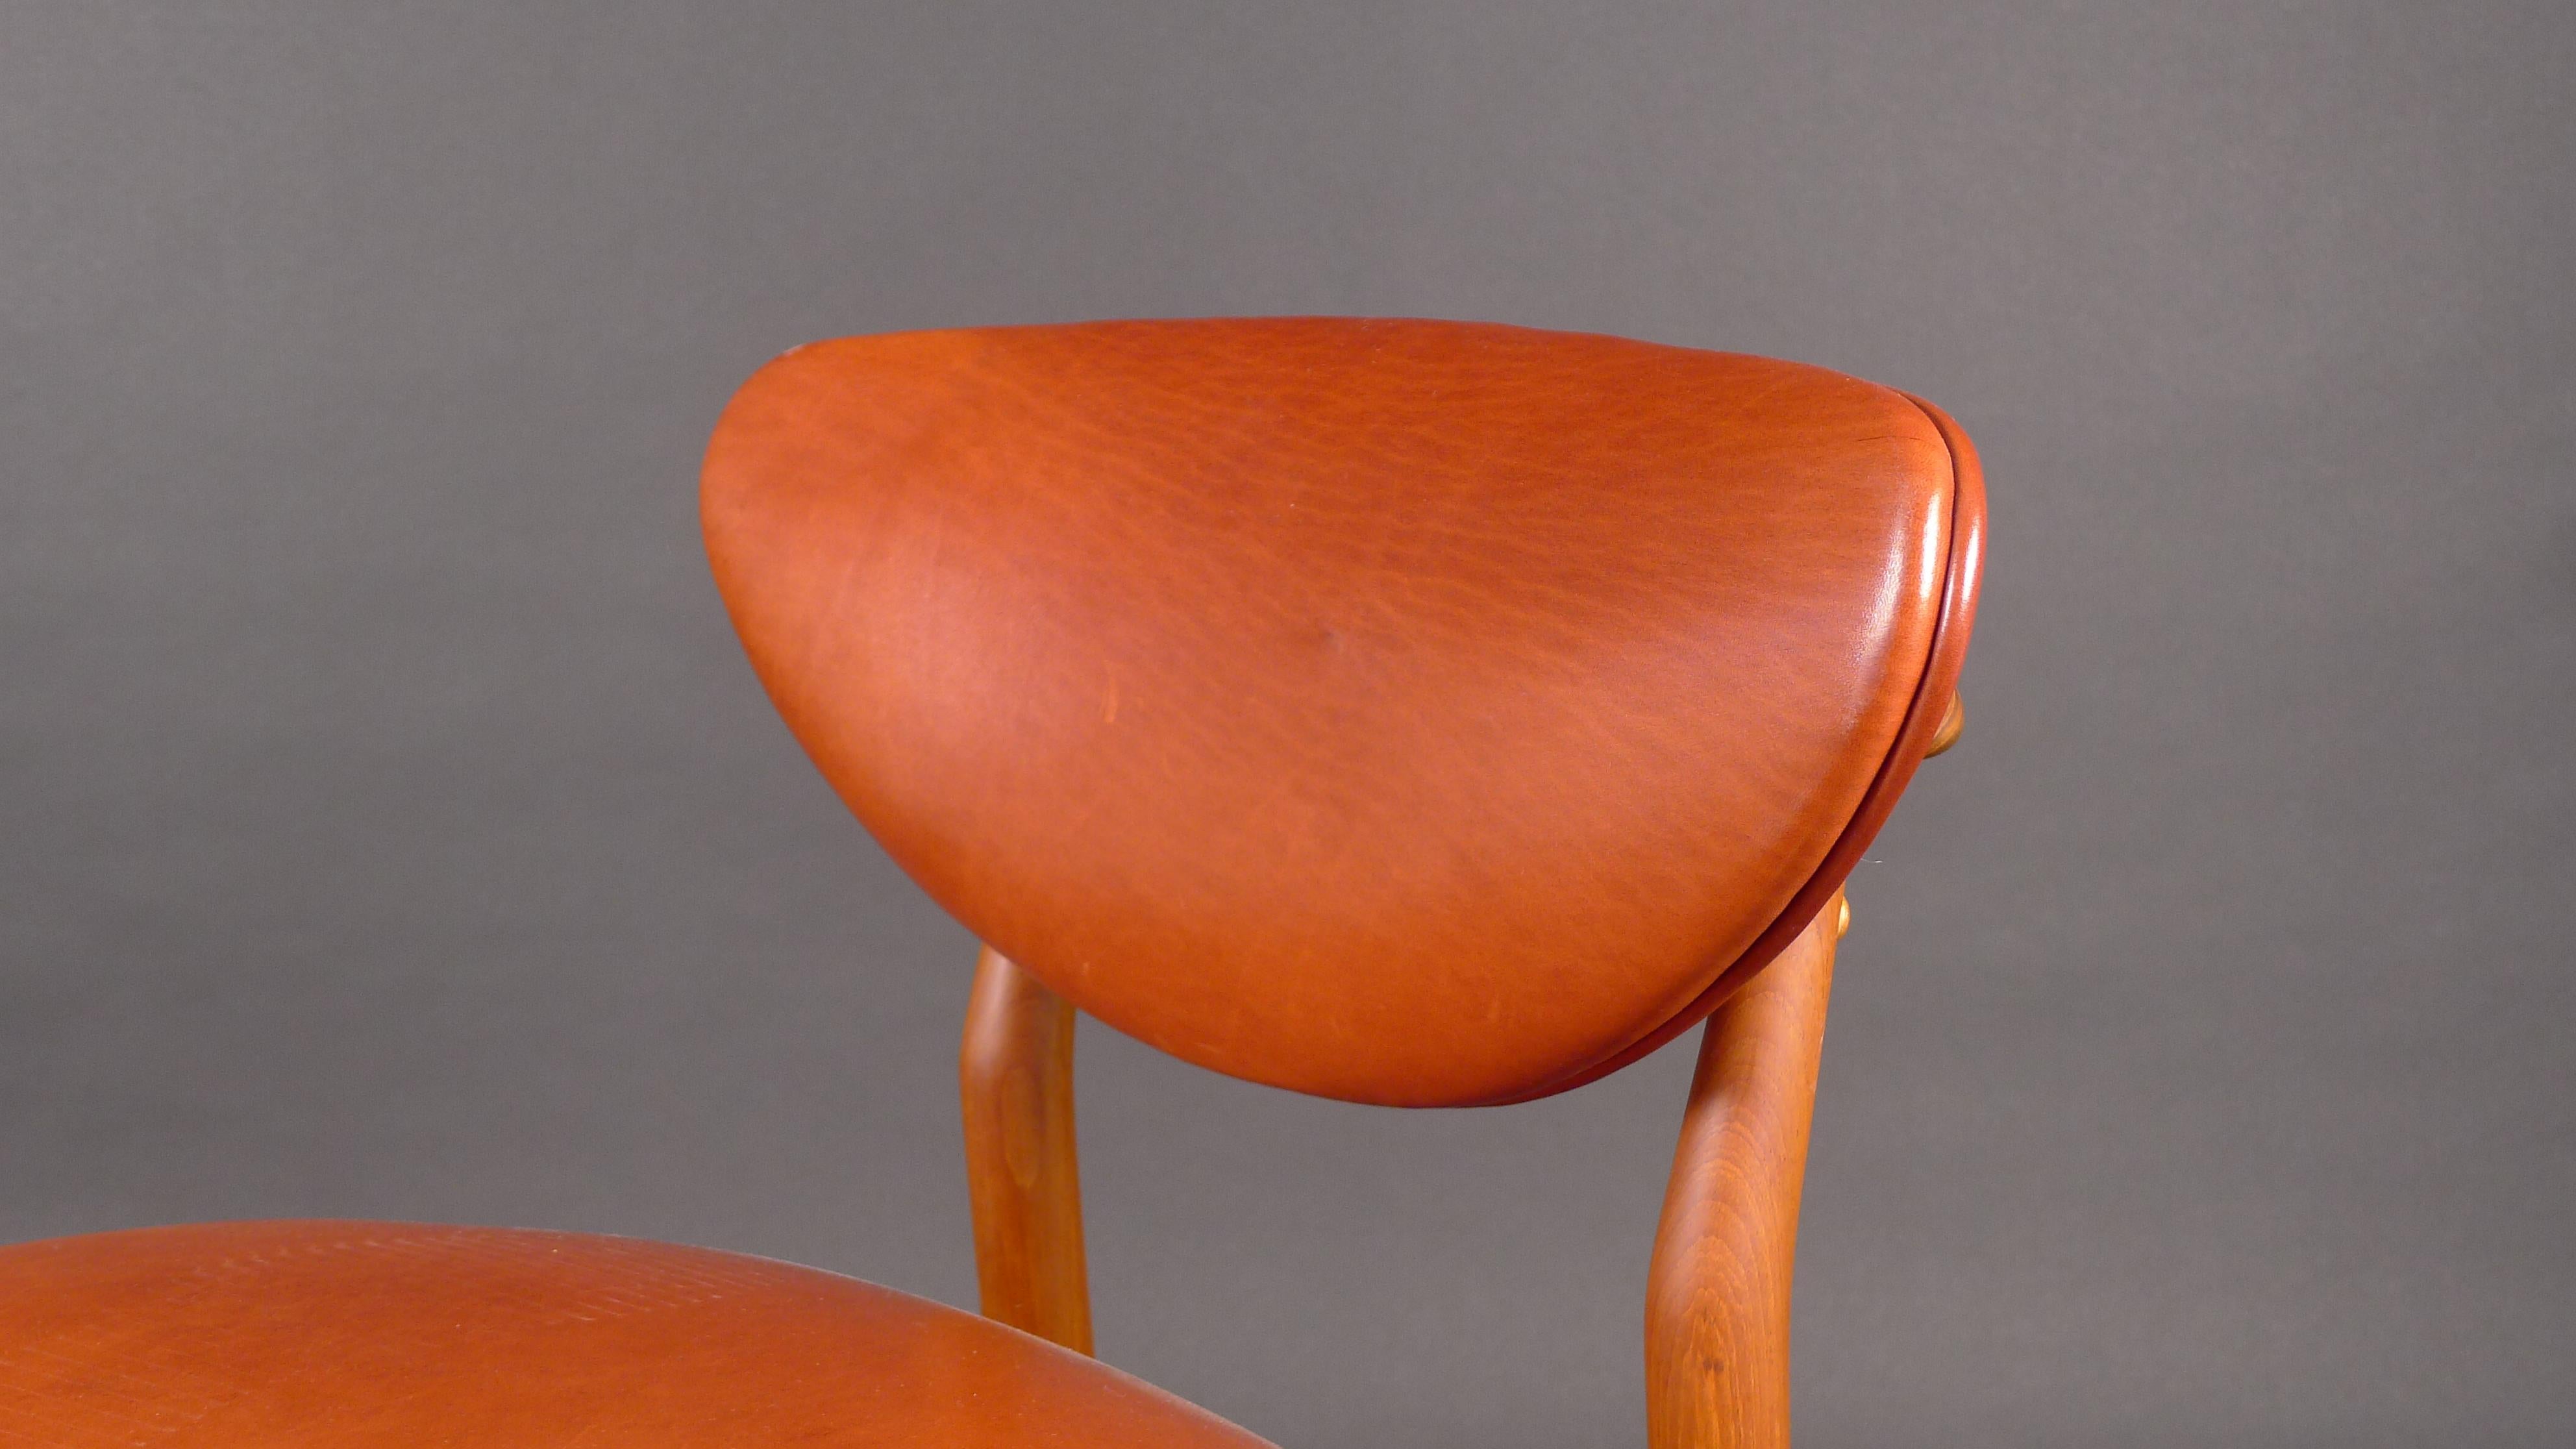 Scandinavian Modern Finn Juhl, 108 Chair, 1946, in Teak, Made by Niels Vodder, Copenhagen, Stamped For Sale